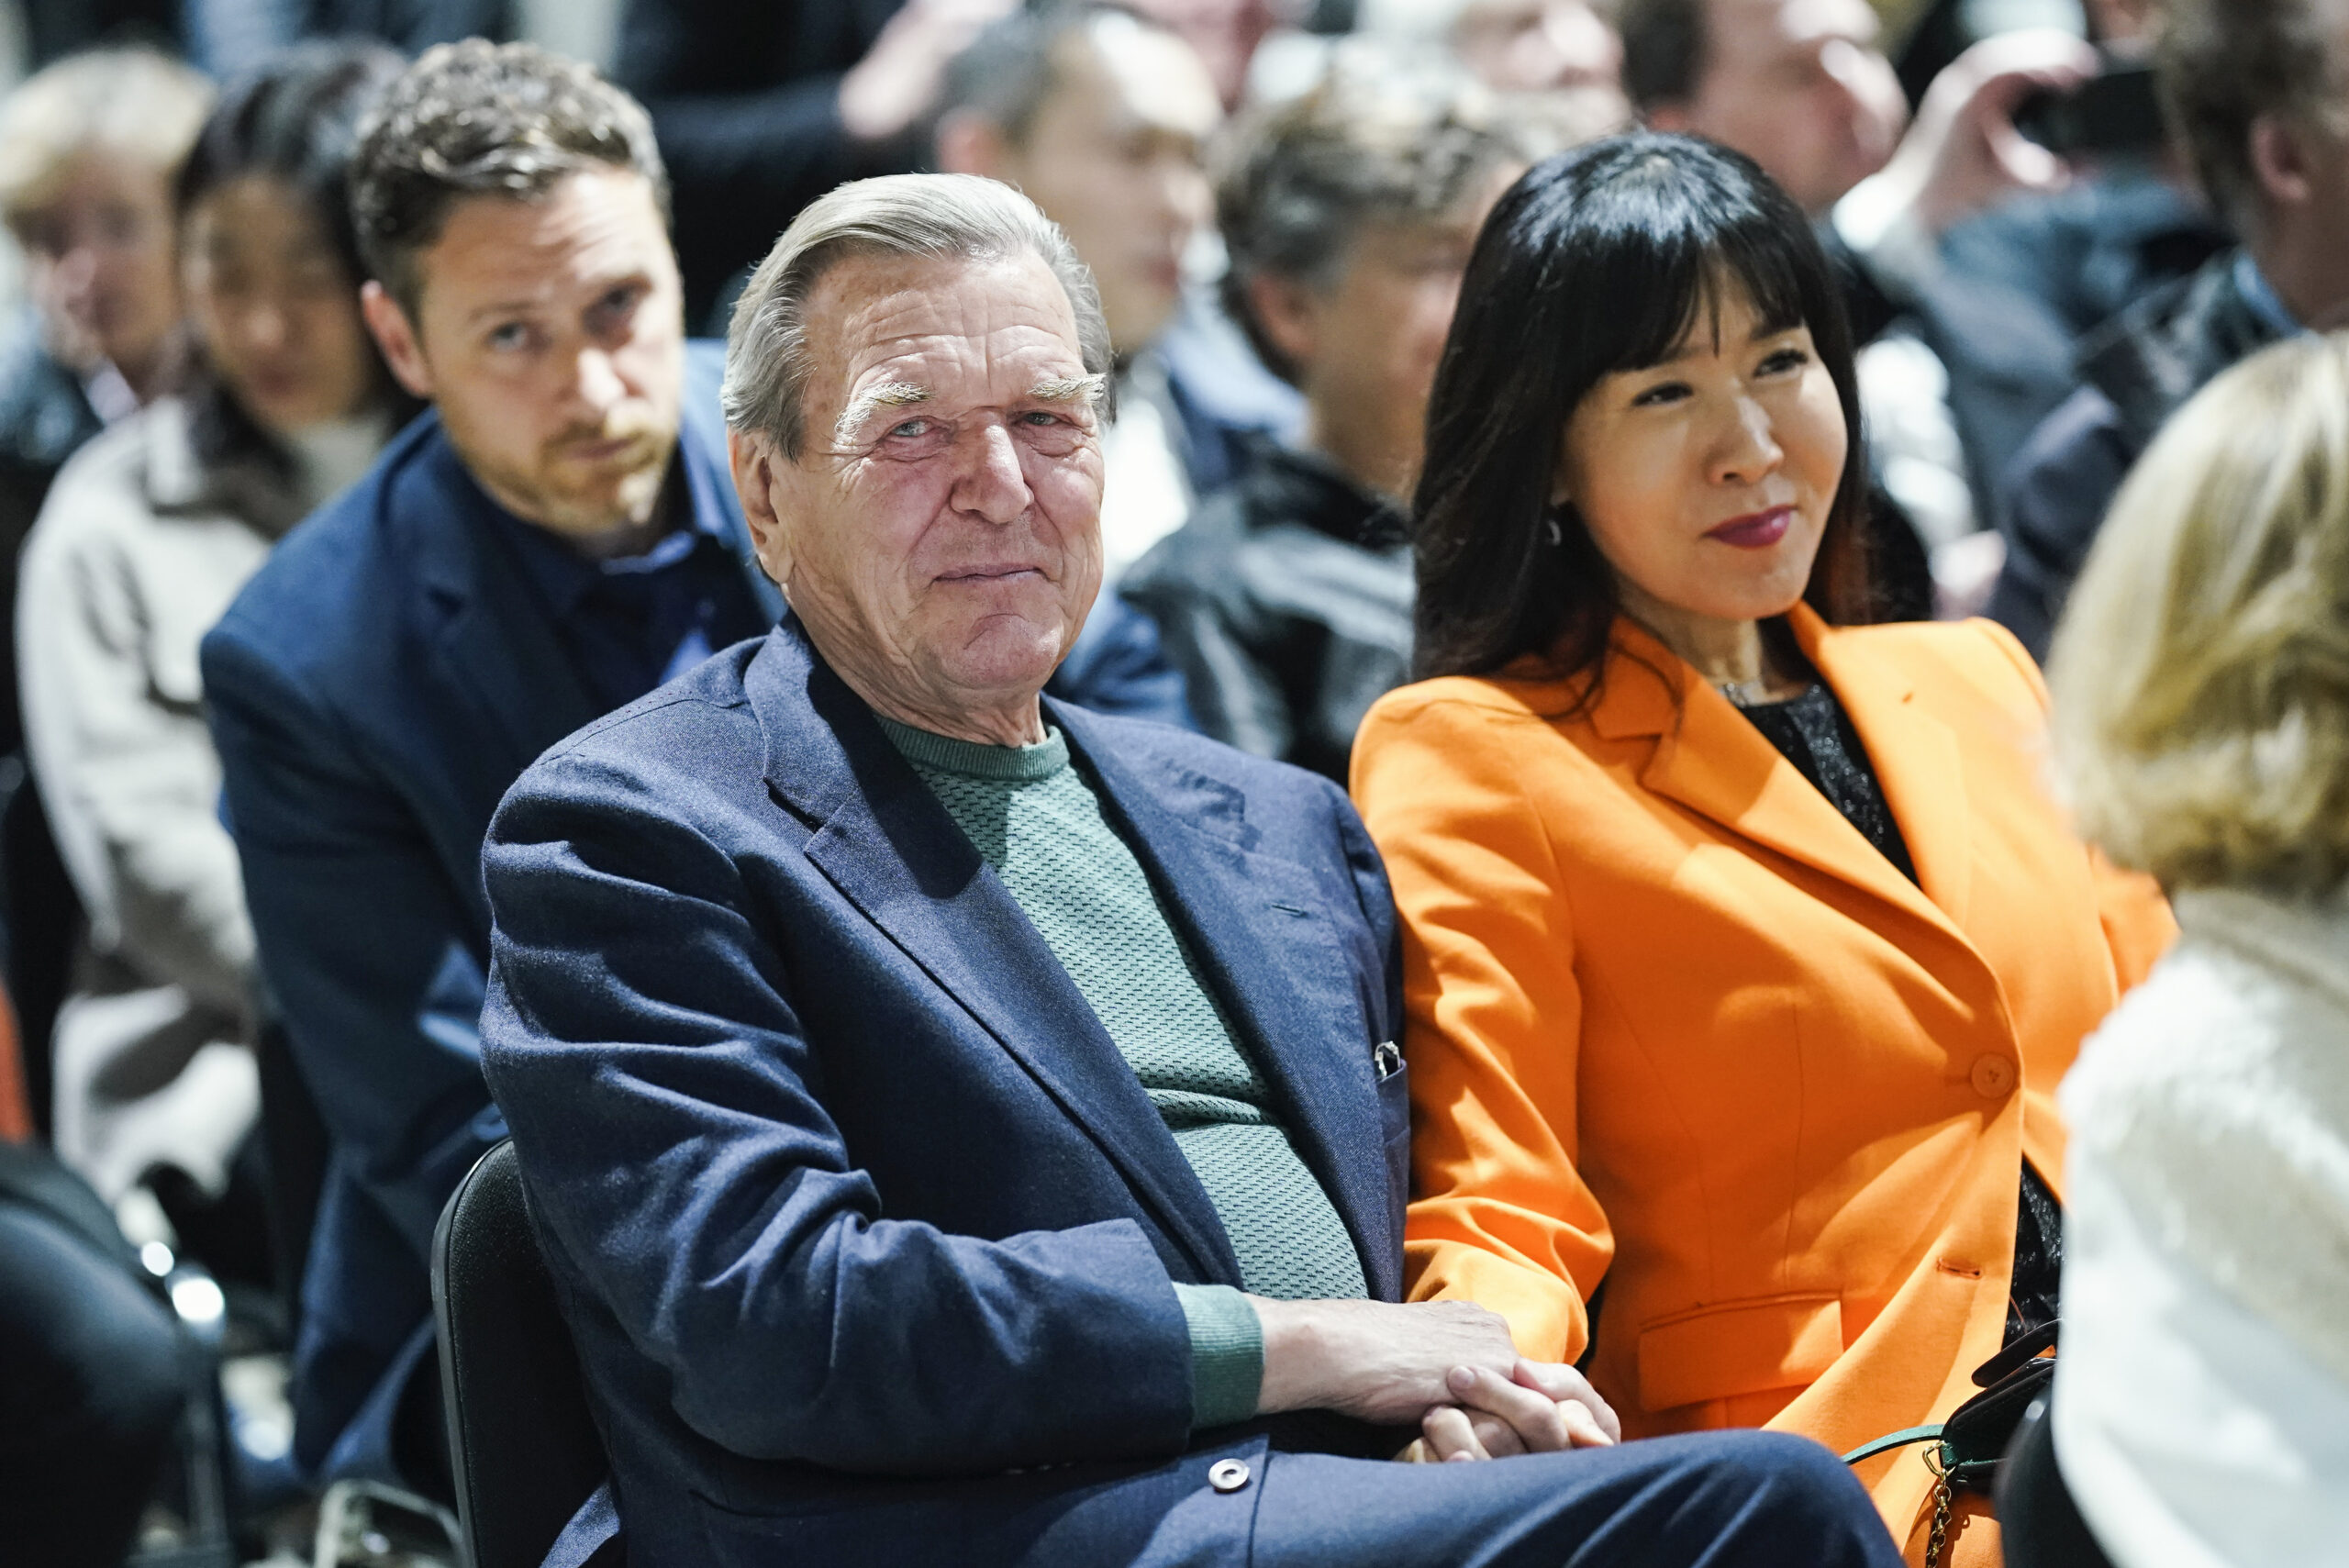 Der ehemalige Bundeskanzler Gerhard Schröder und seine Frau So-yeon Schröder-Kim sitzen vor der Enthüllung der Lüpertz-Kunstwerke zum Thema "Genesis“ im Publikum.